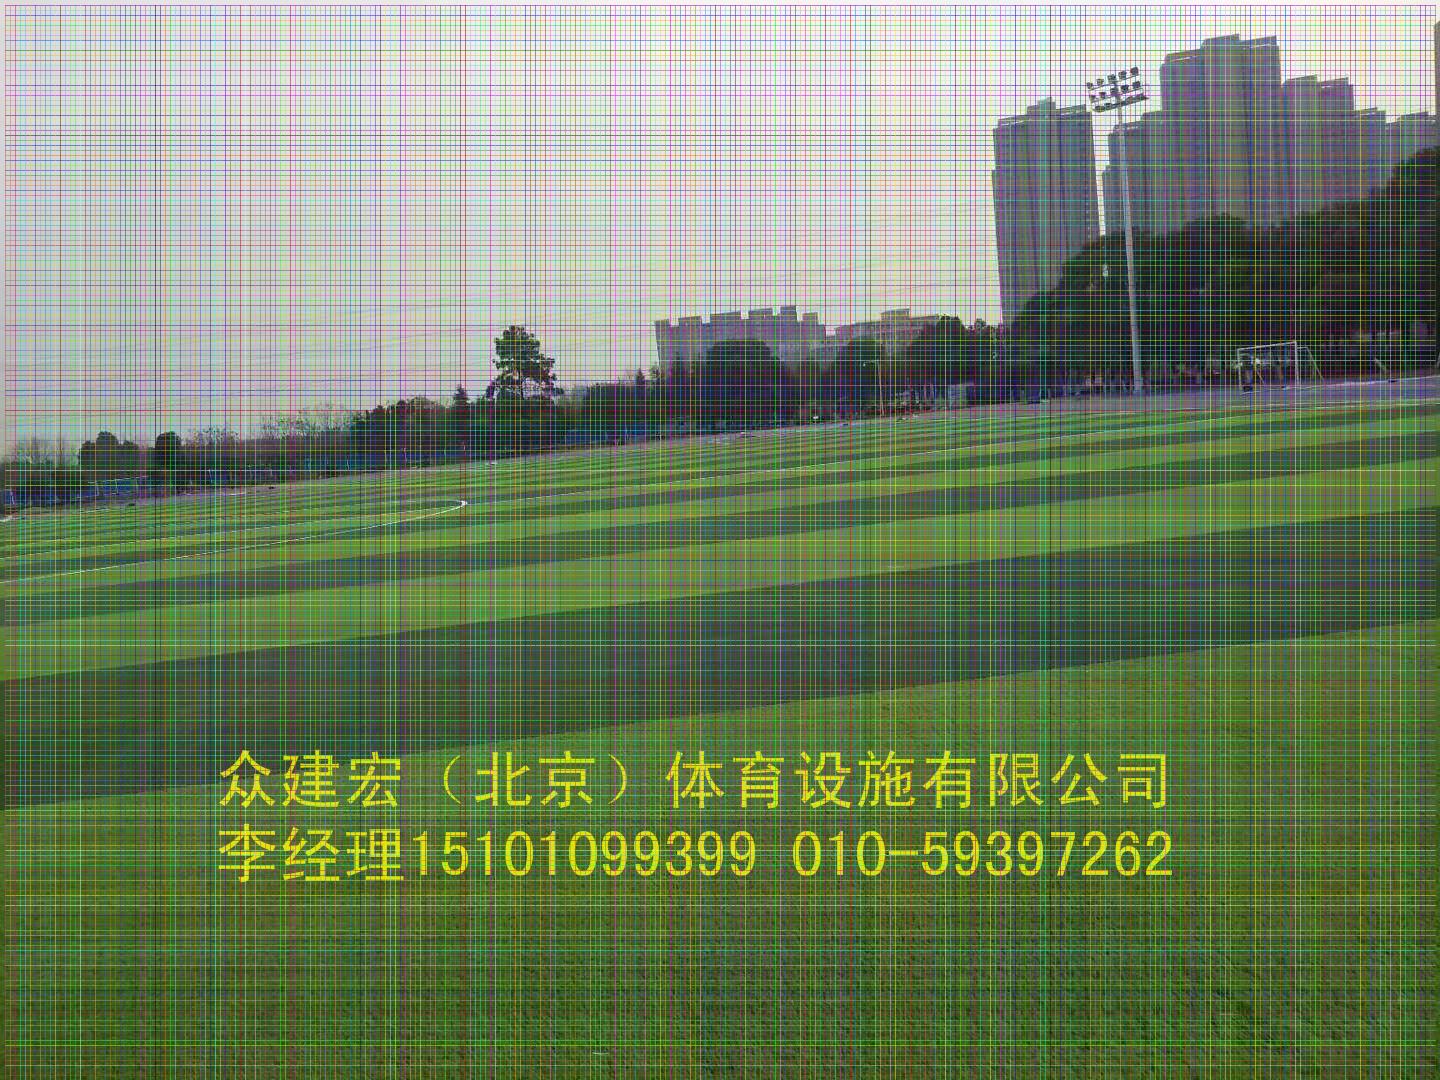 中欧体育北京周边塑胶跑道施工供货厂家(图2)